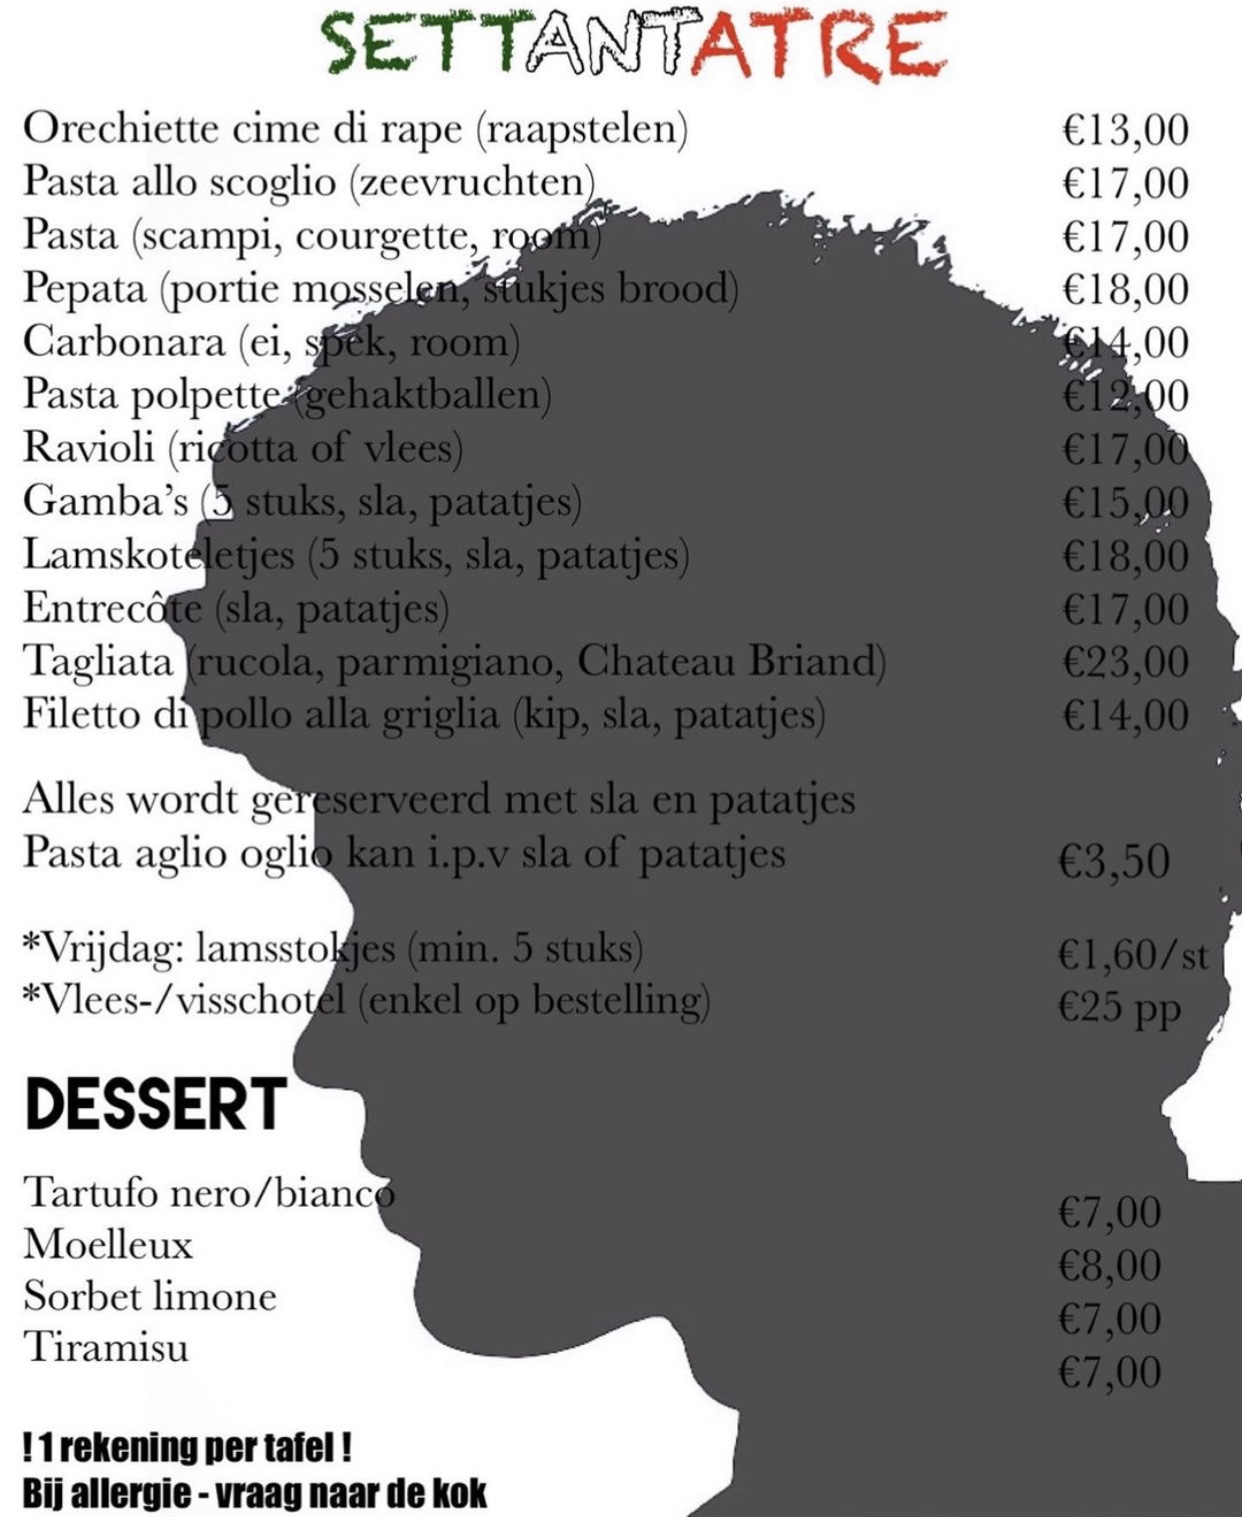 Gran Cafe Settantatre menu 2